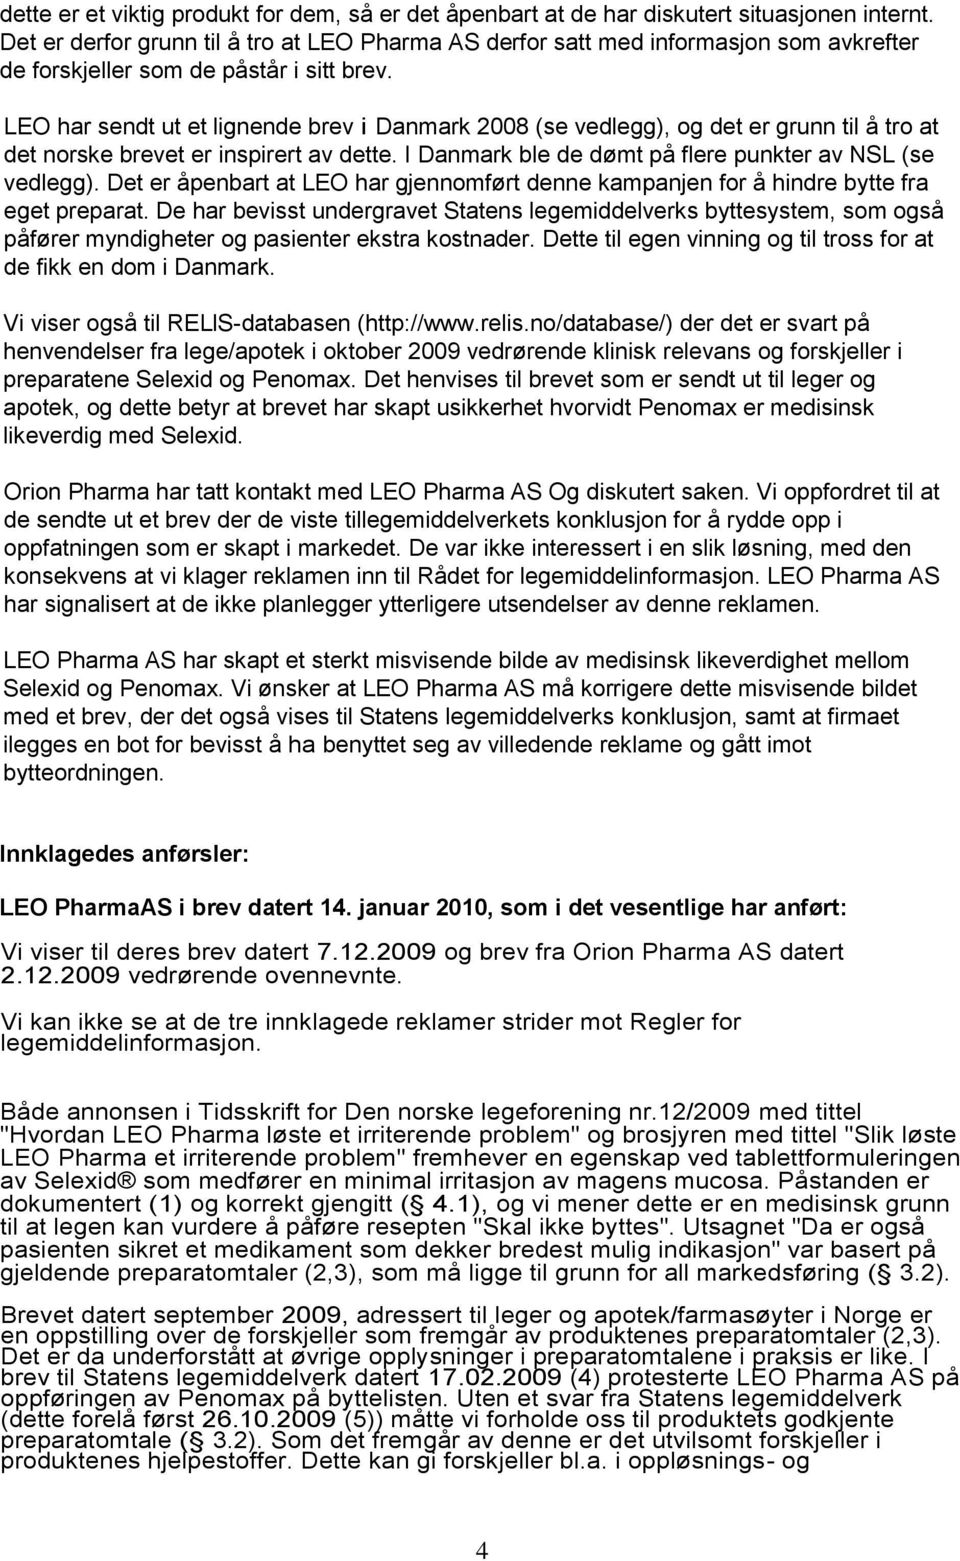 LEO har sendt ut et lignende brev i Danmark 2008 (se vedlegg), og det er grunn til å tro at det norske brevet er inspirert av dette. I Danmark ble de dømt på flere punkter av NSL (se vedlegg).